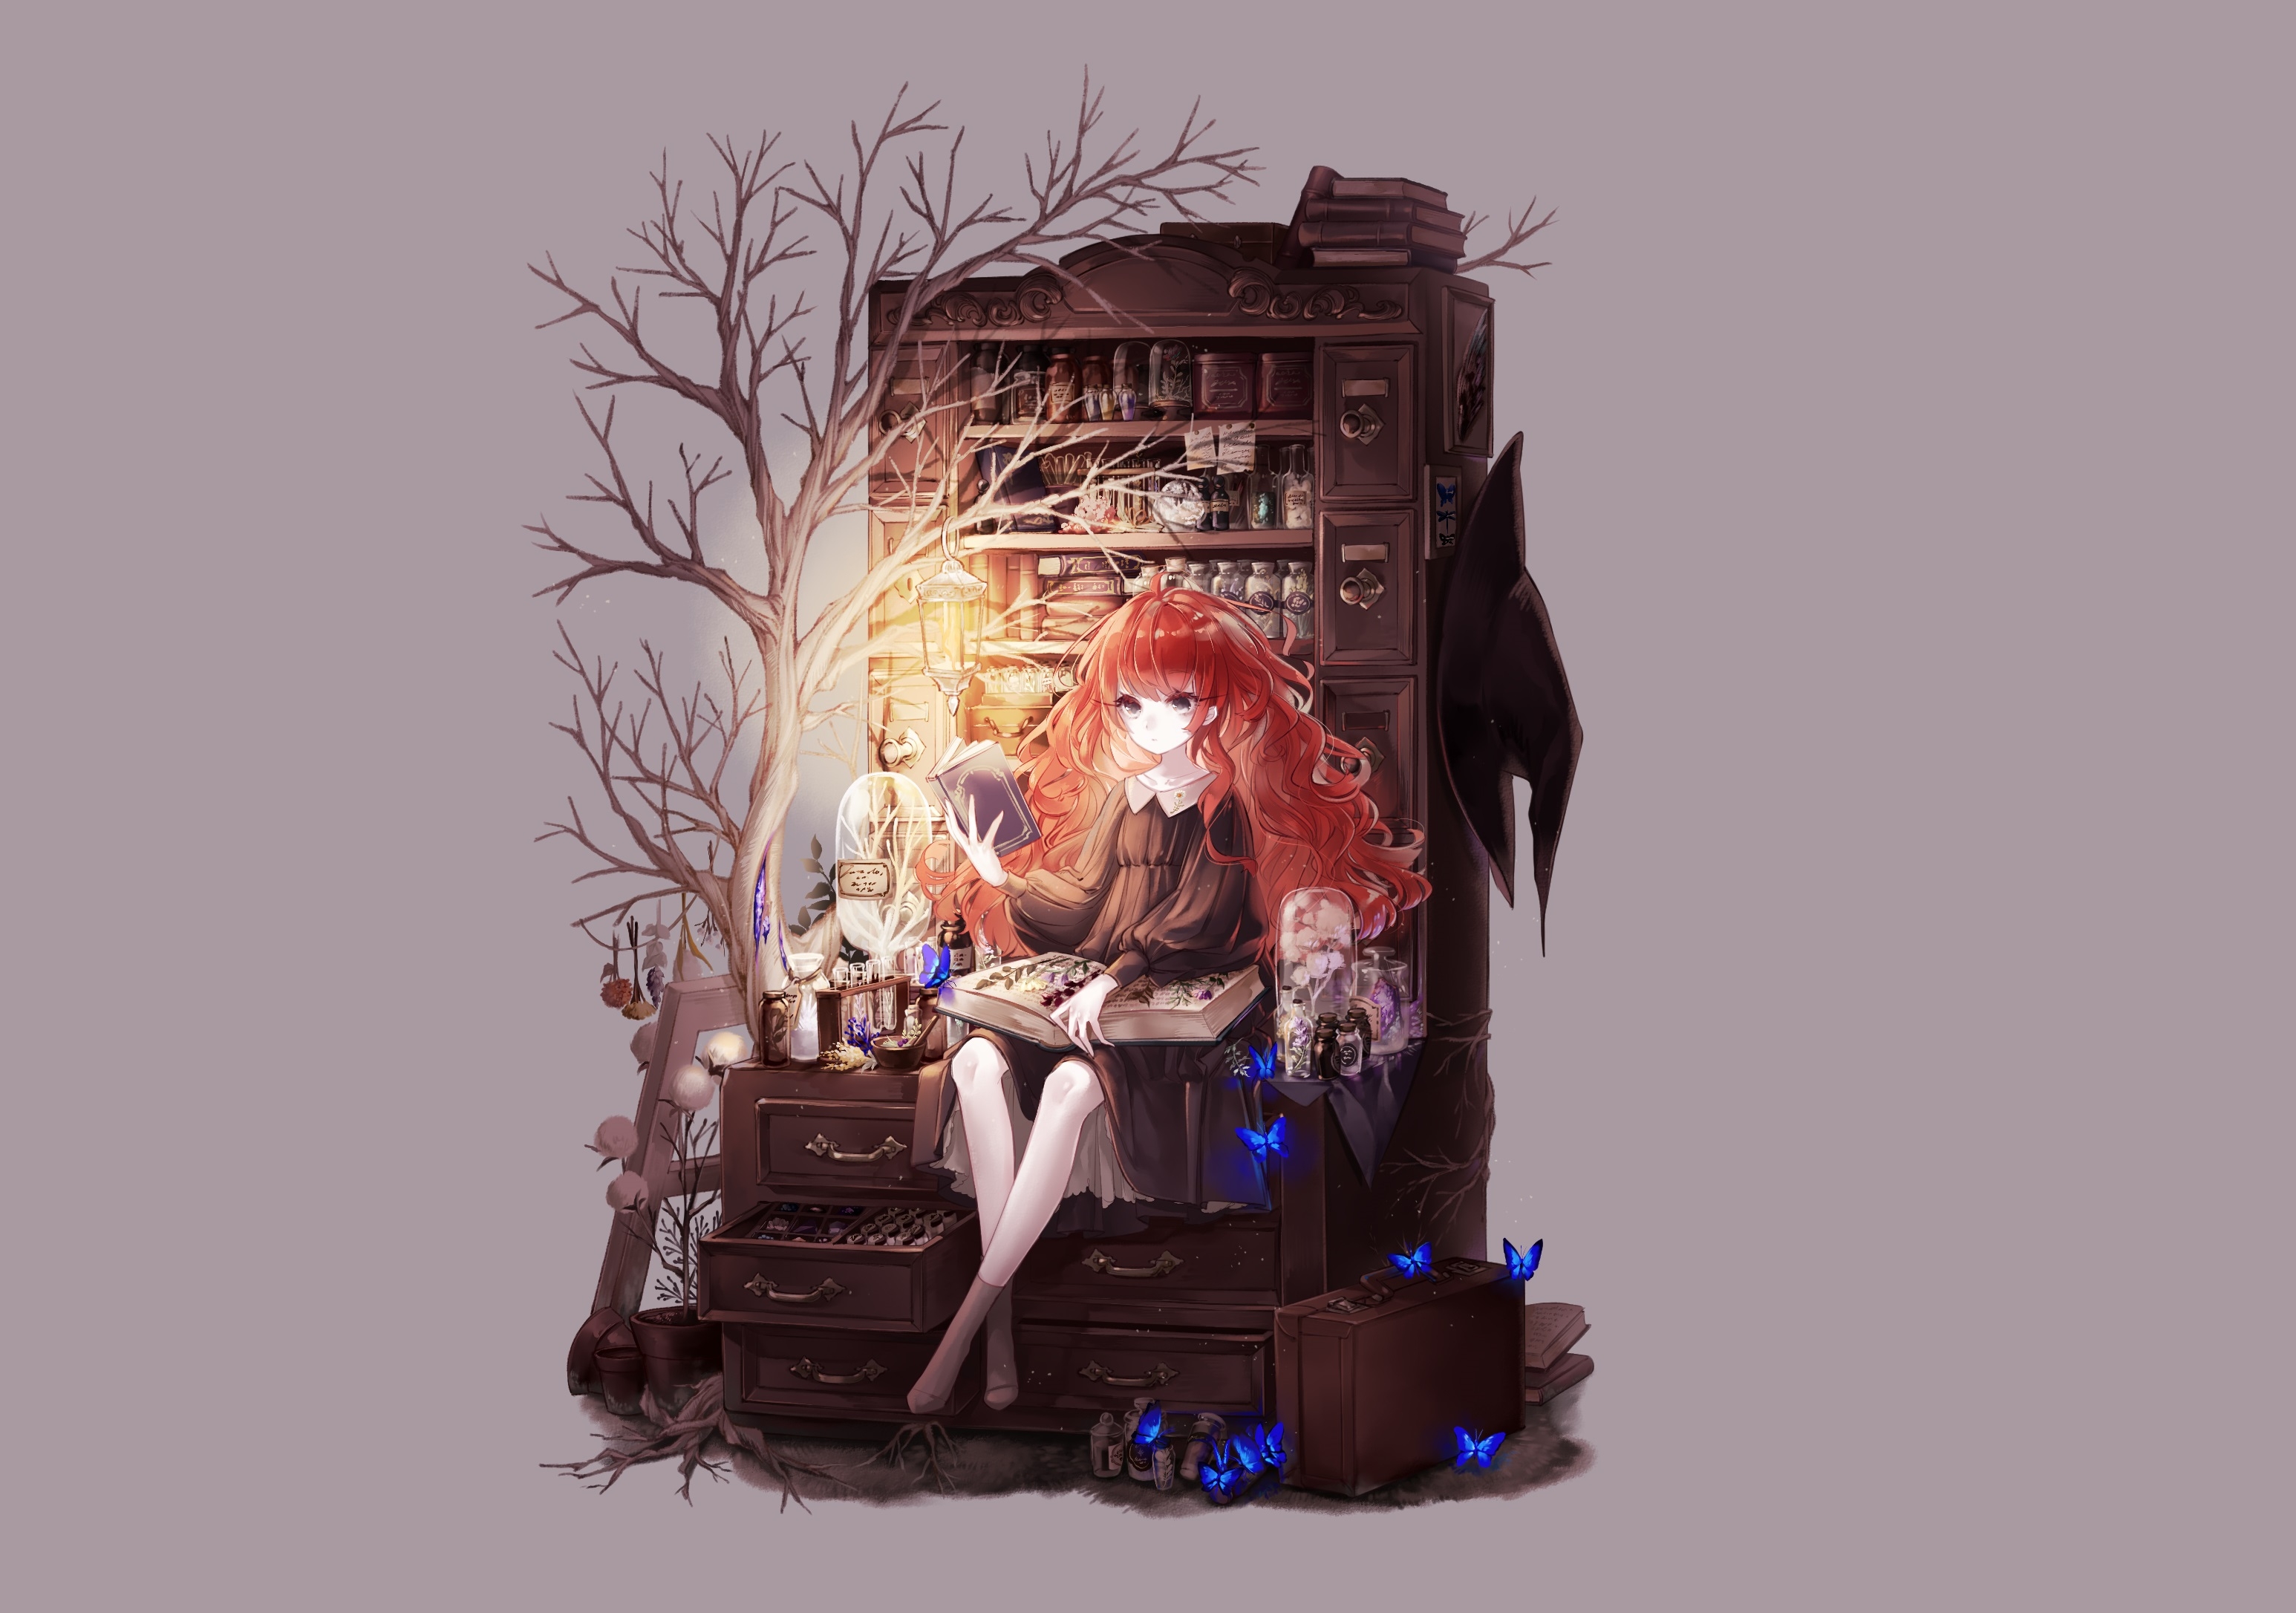 Download 3092x2172 Anime Girl, Red Hair, Book, Lantern, Fantasy